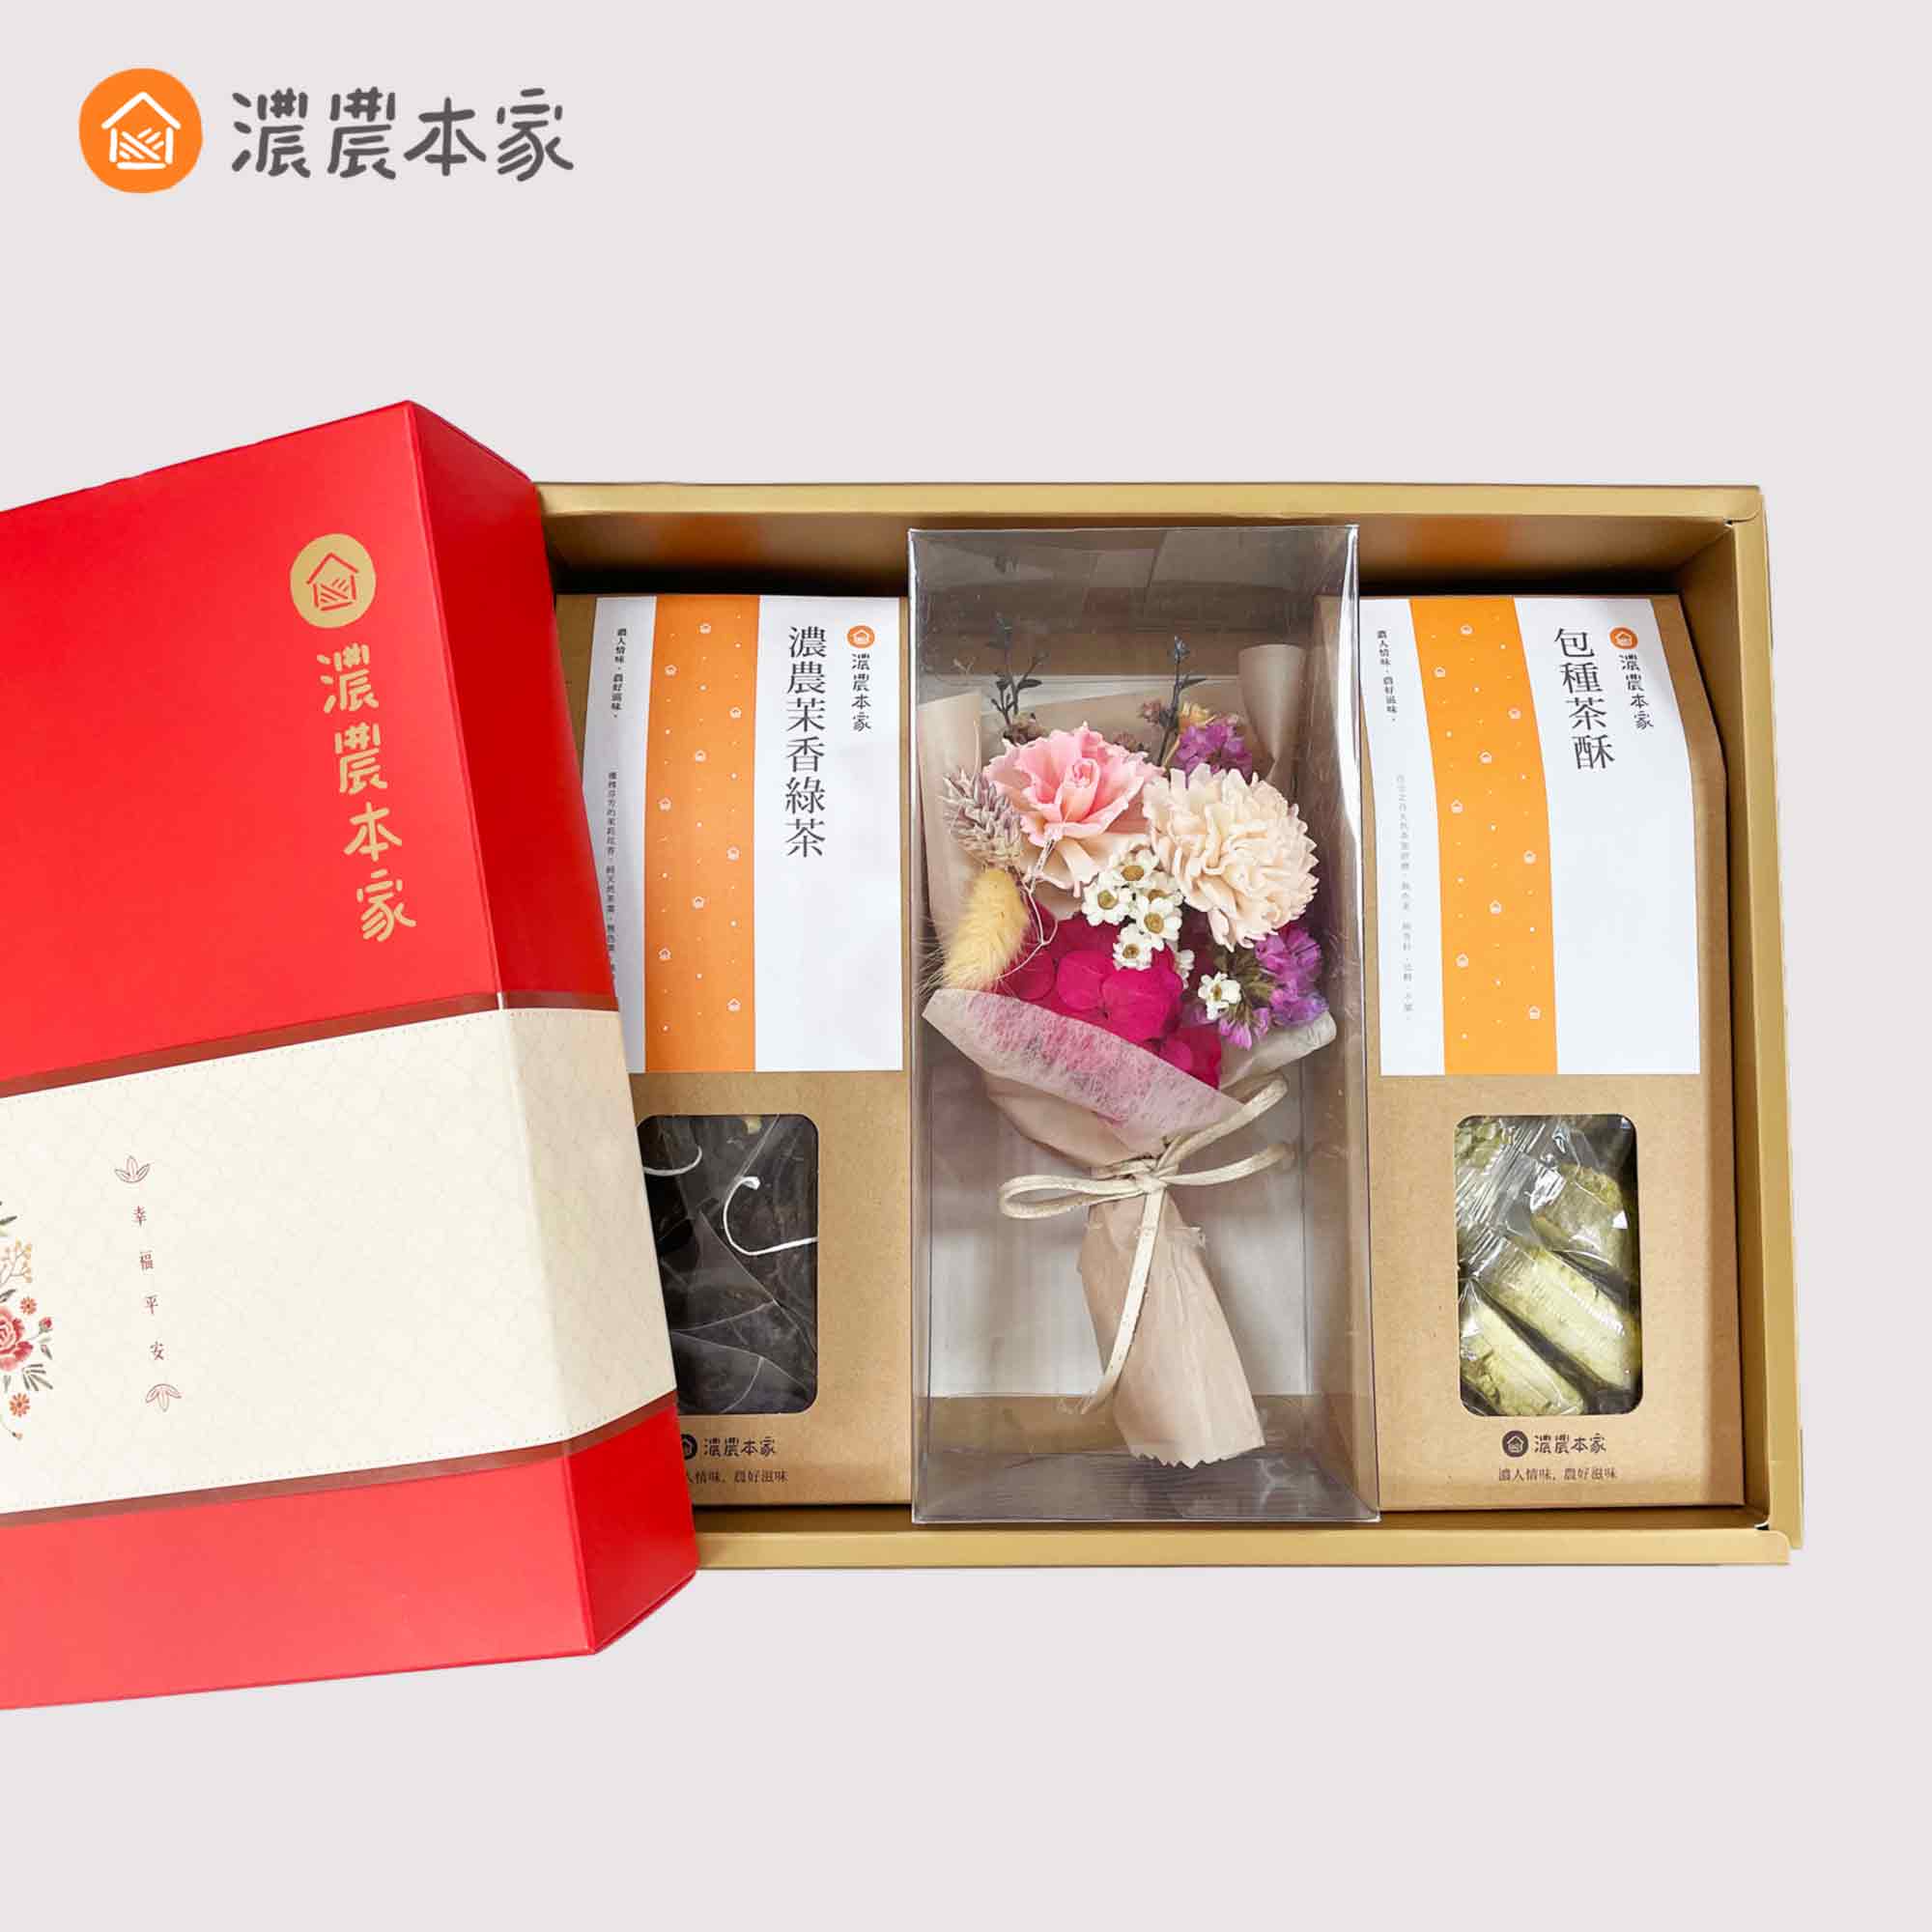 企業送禮客戶伴手禮盒推薦特色花束伴手禮